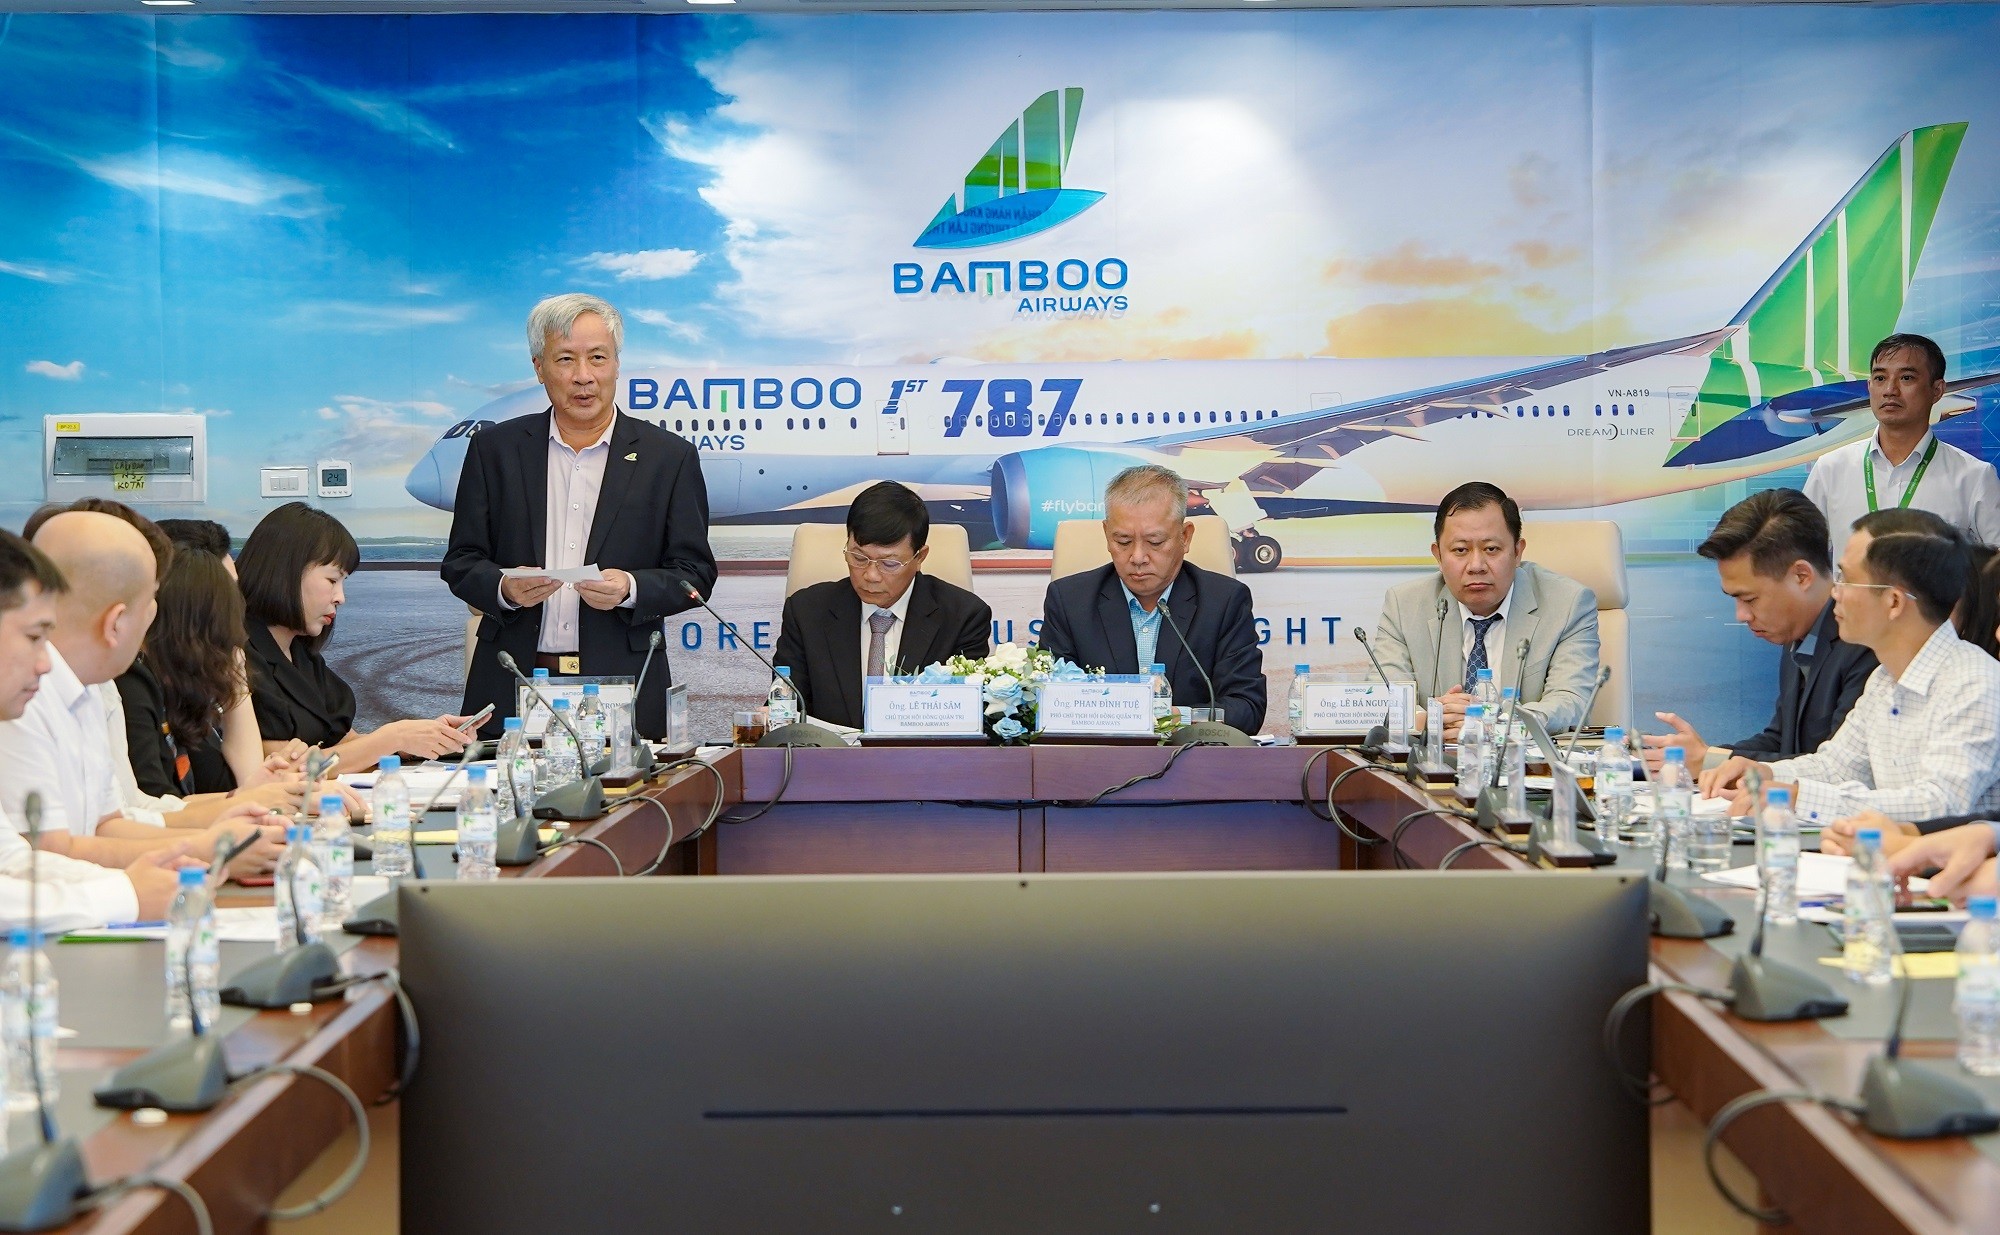 Hồ sơ doanh nghiệp - Bamboo Airway thông qua lựa chọn cổ đông chiến lược, bổ sung nhân sự